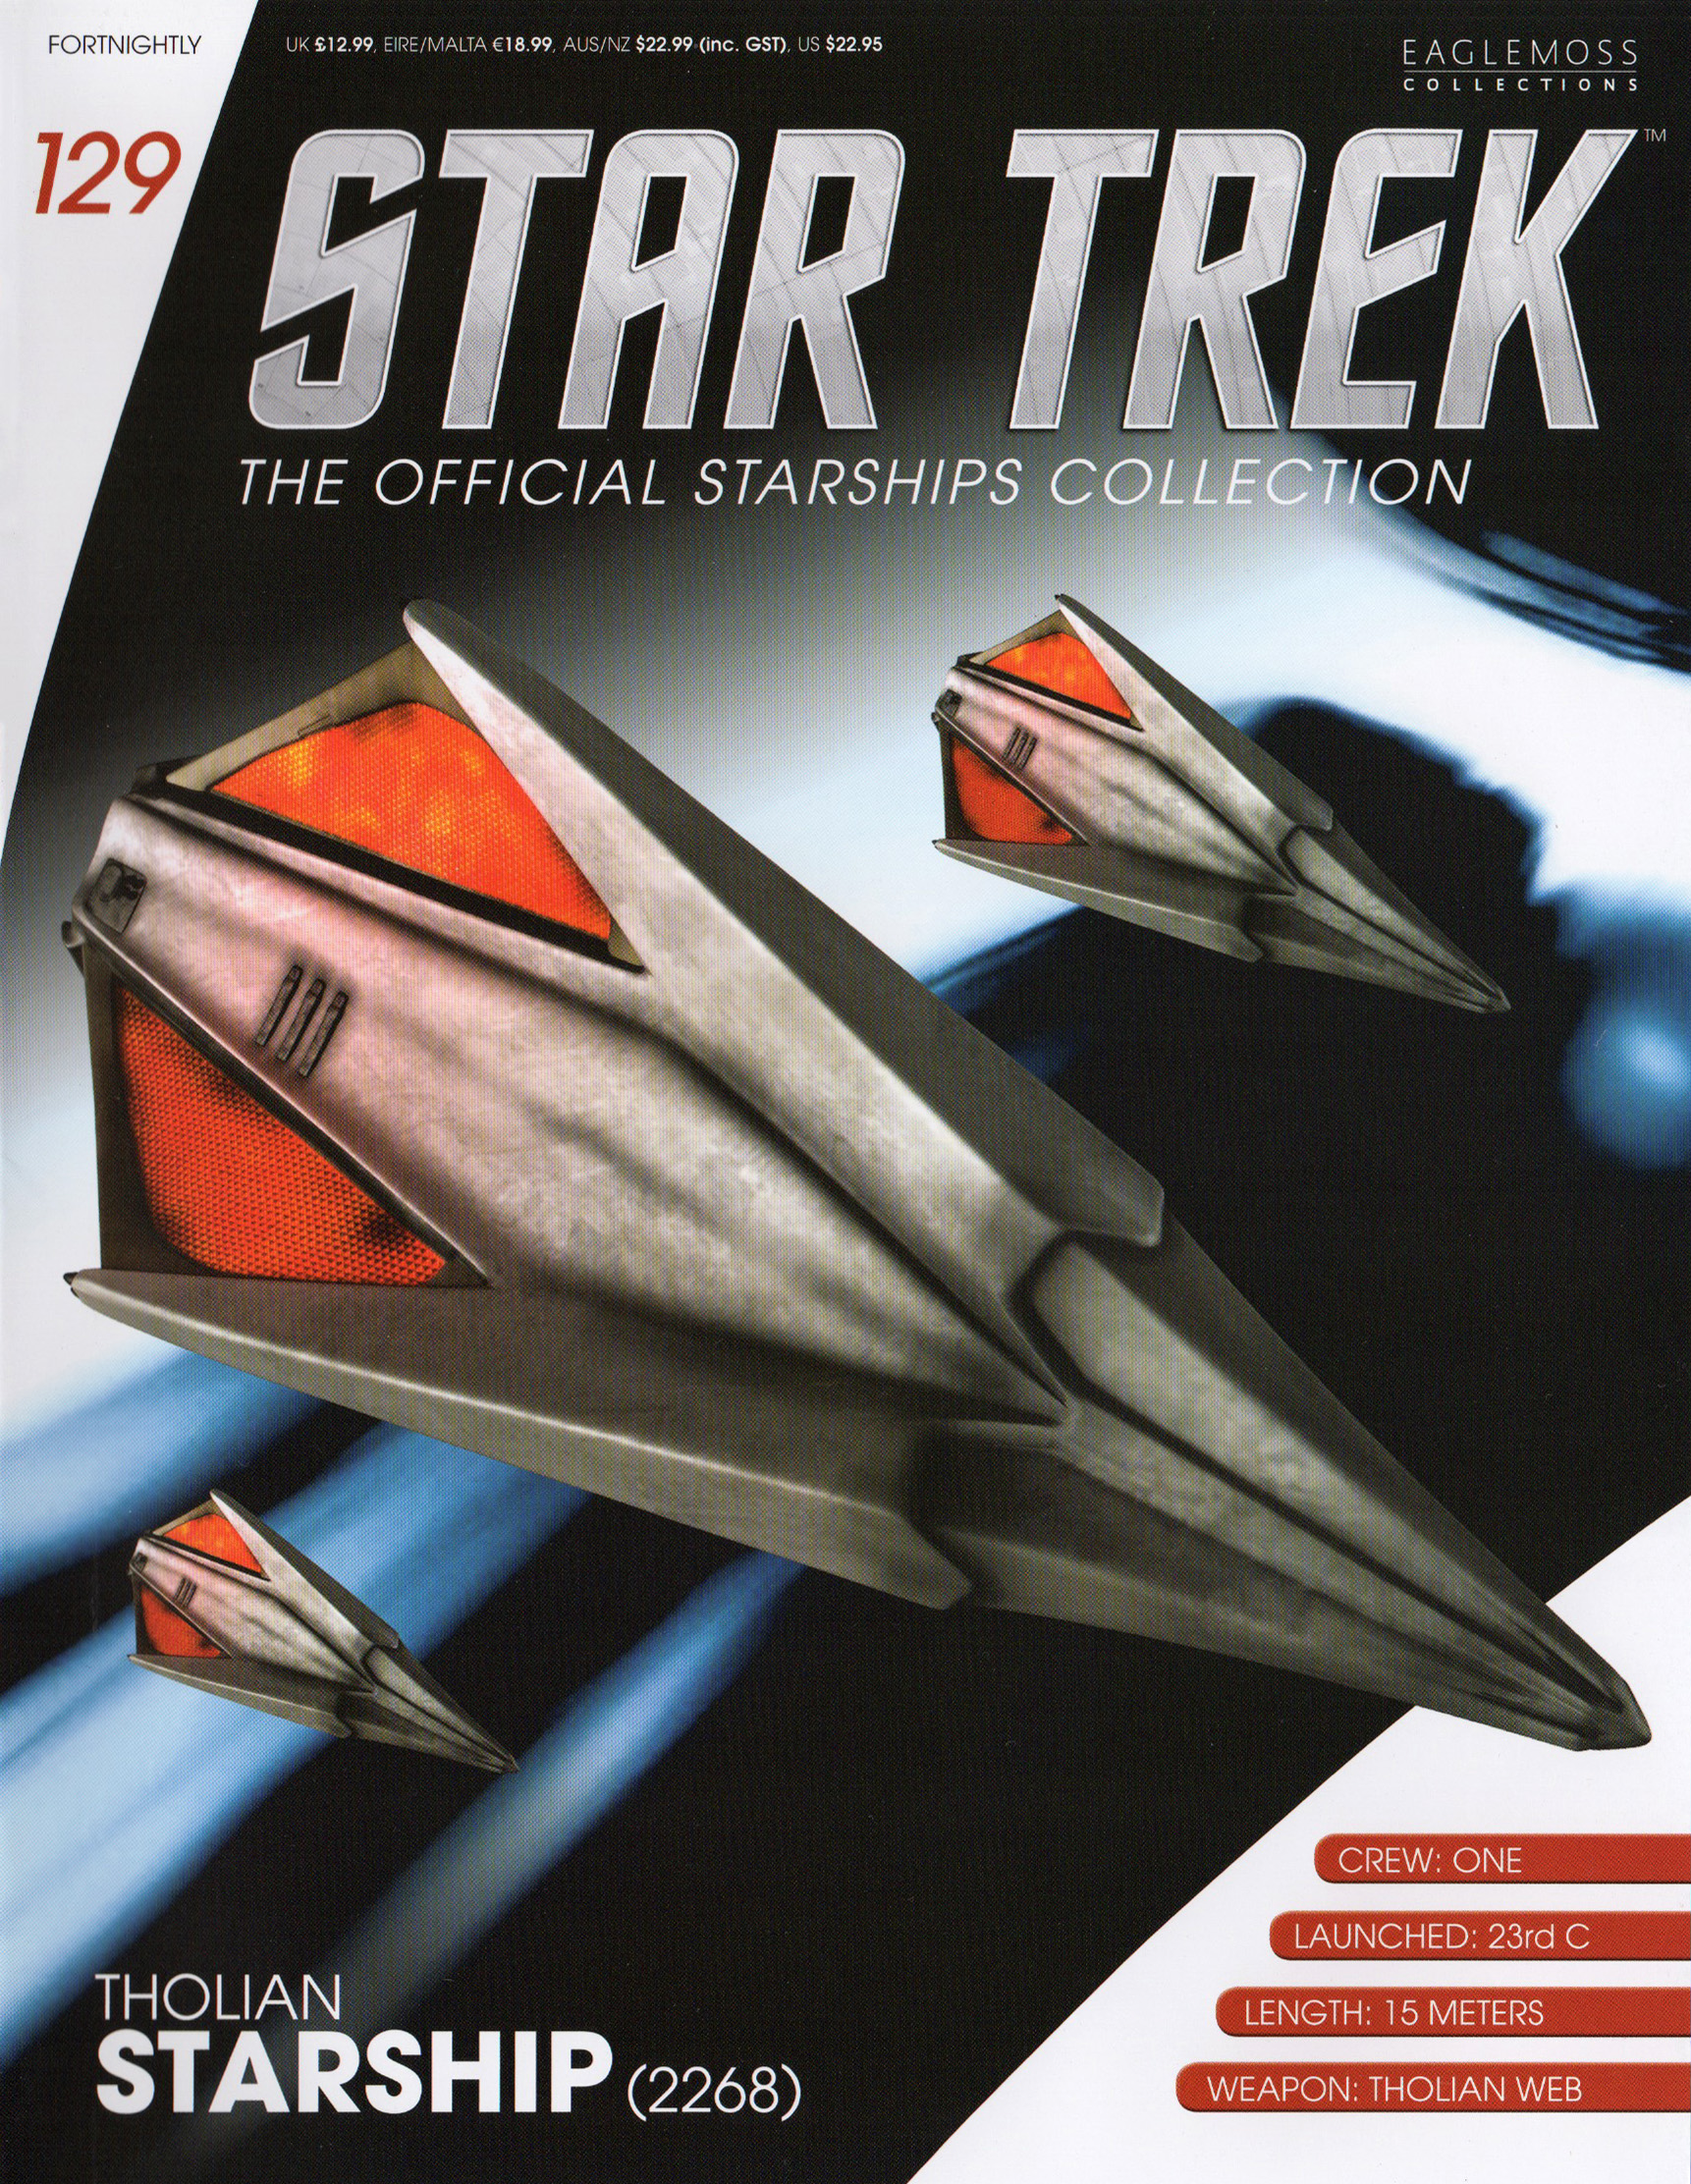 Eaglemoss Star Trek Starships Issue 129